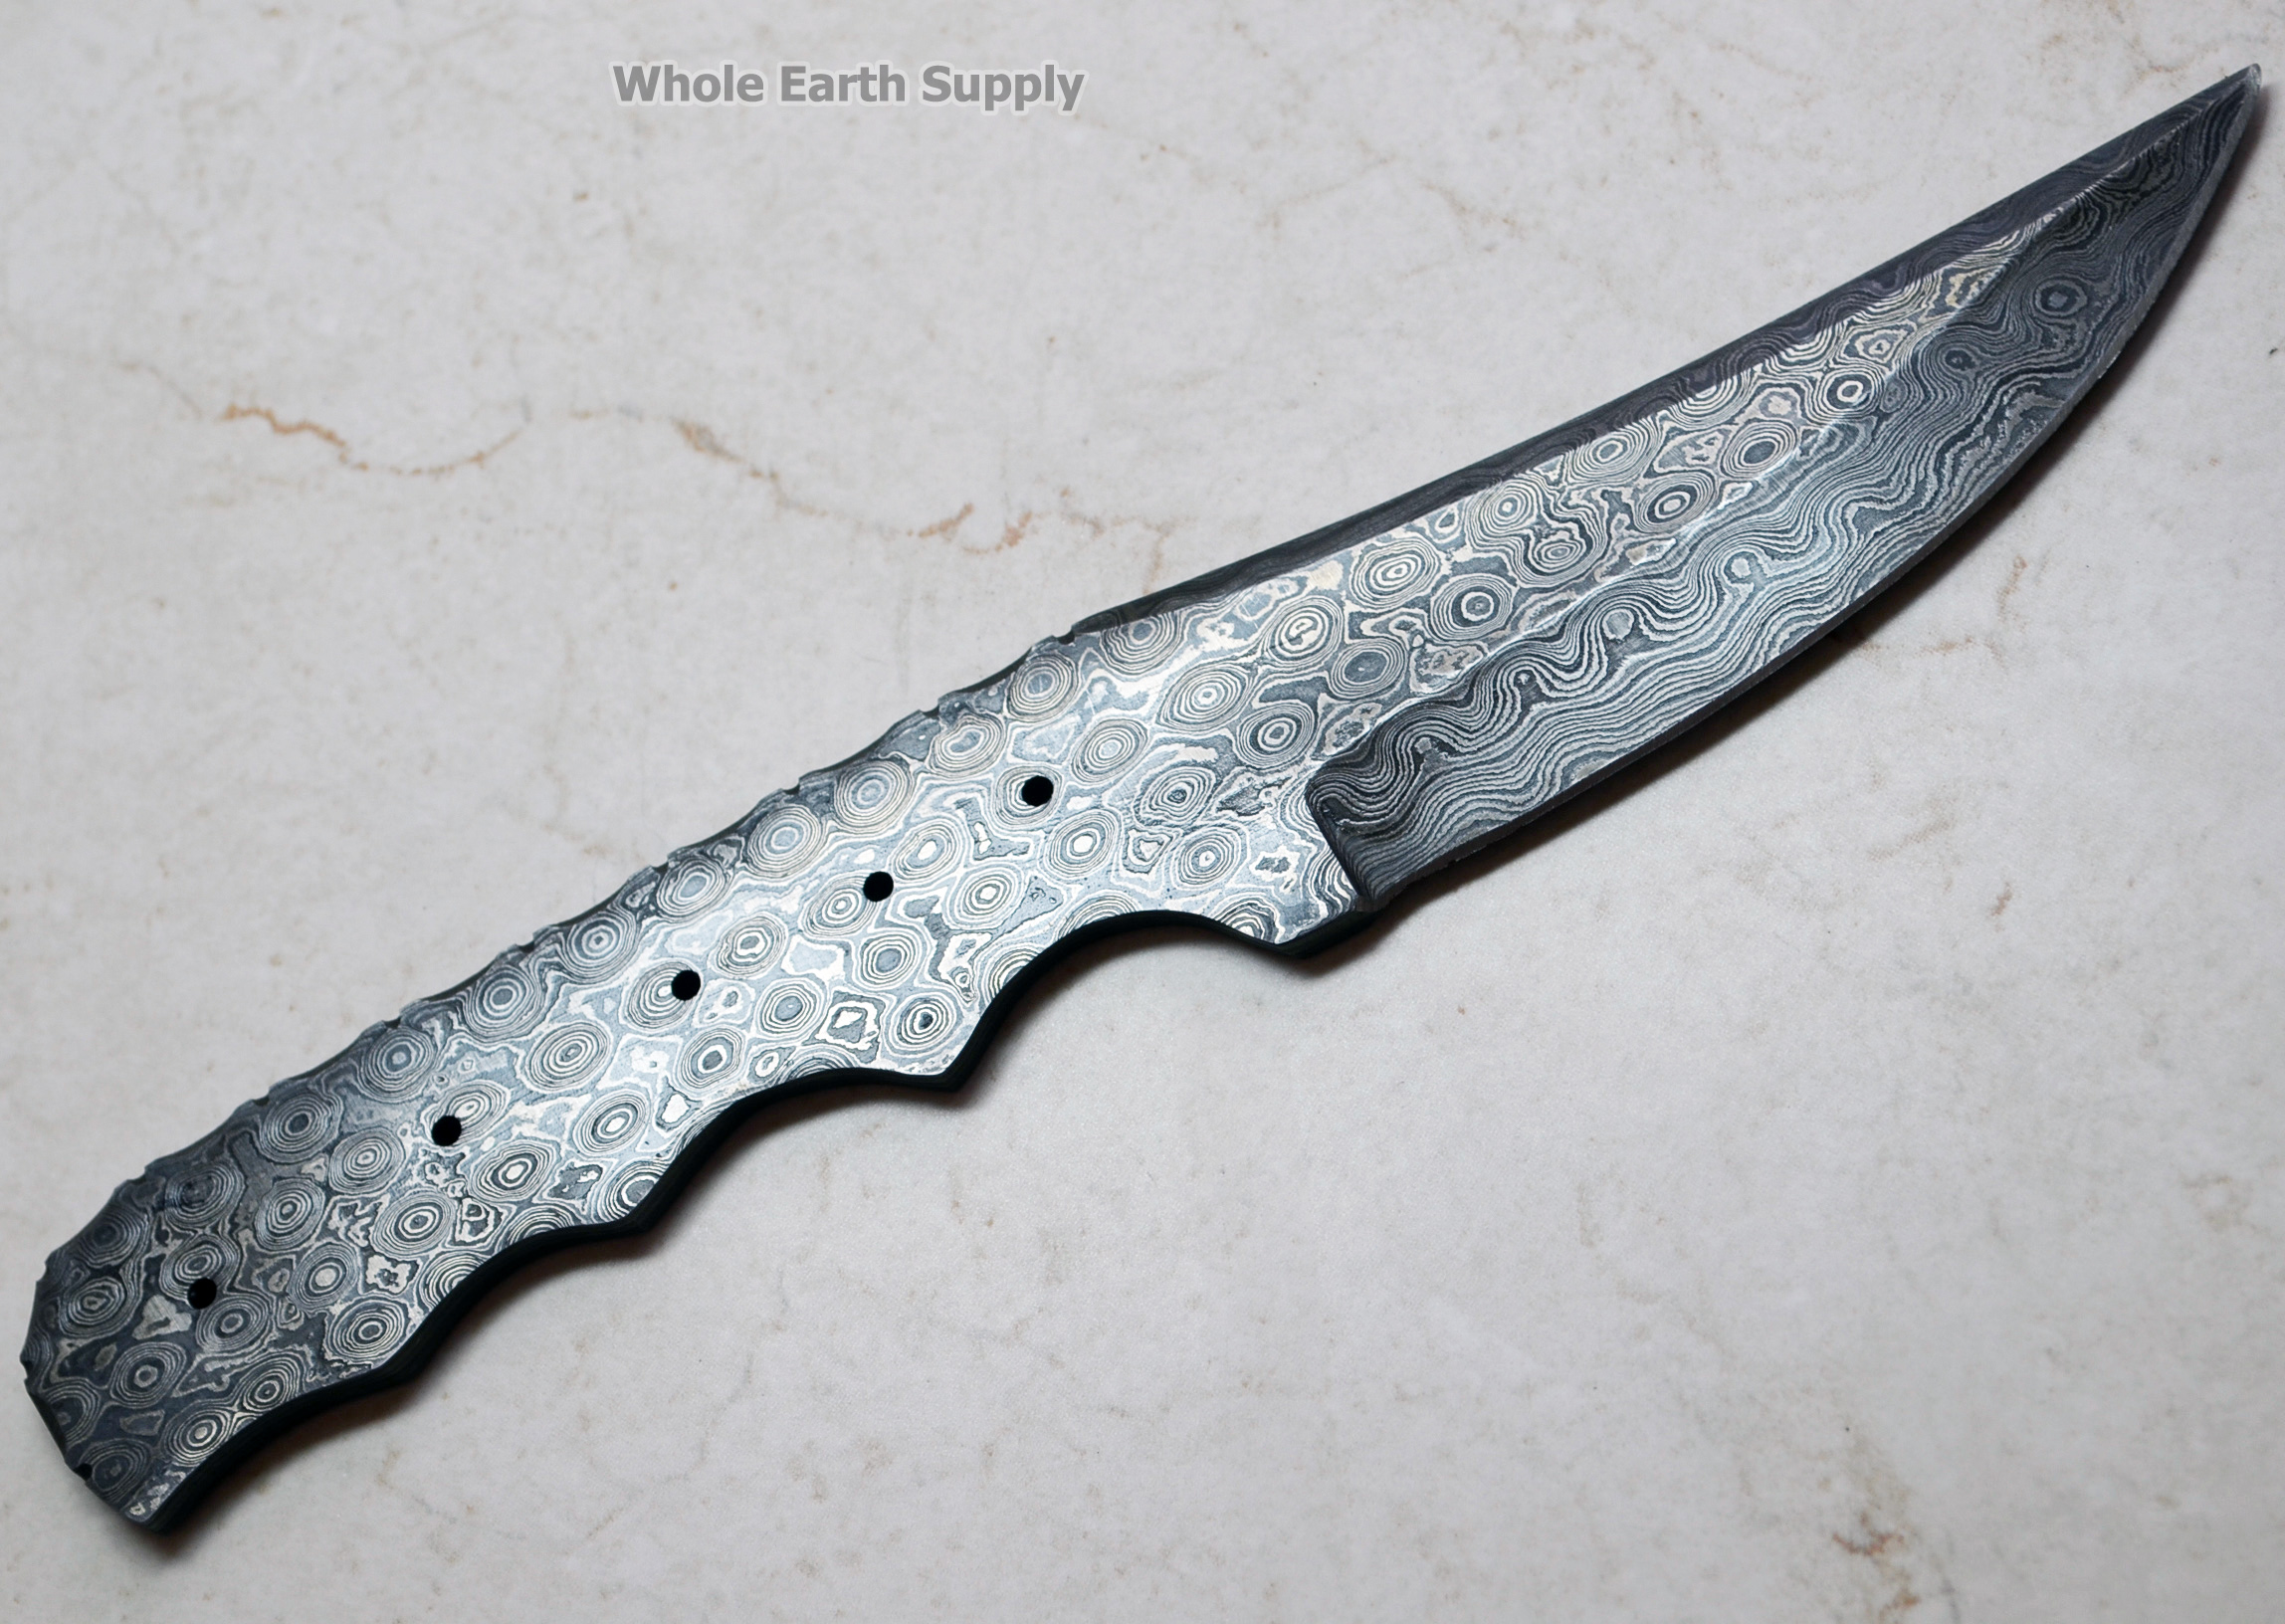 Damascus Knife Blank Making Skinning Skinner 1095 High Carbon Blade